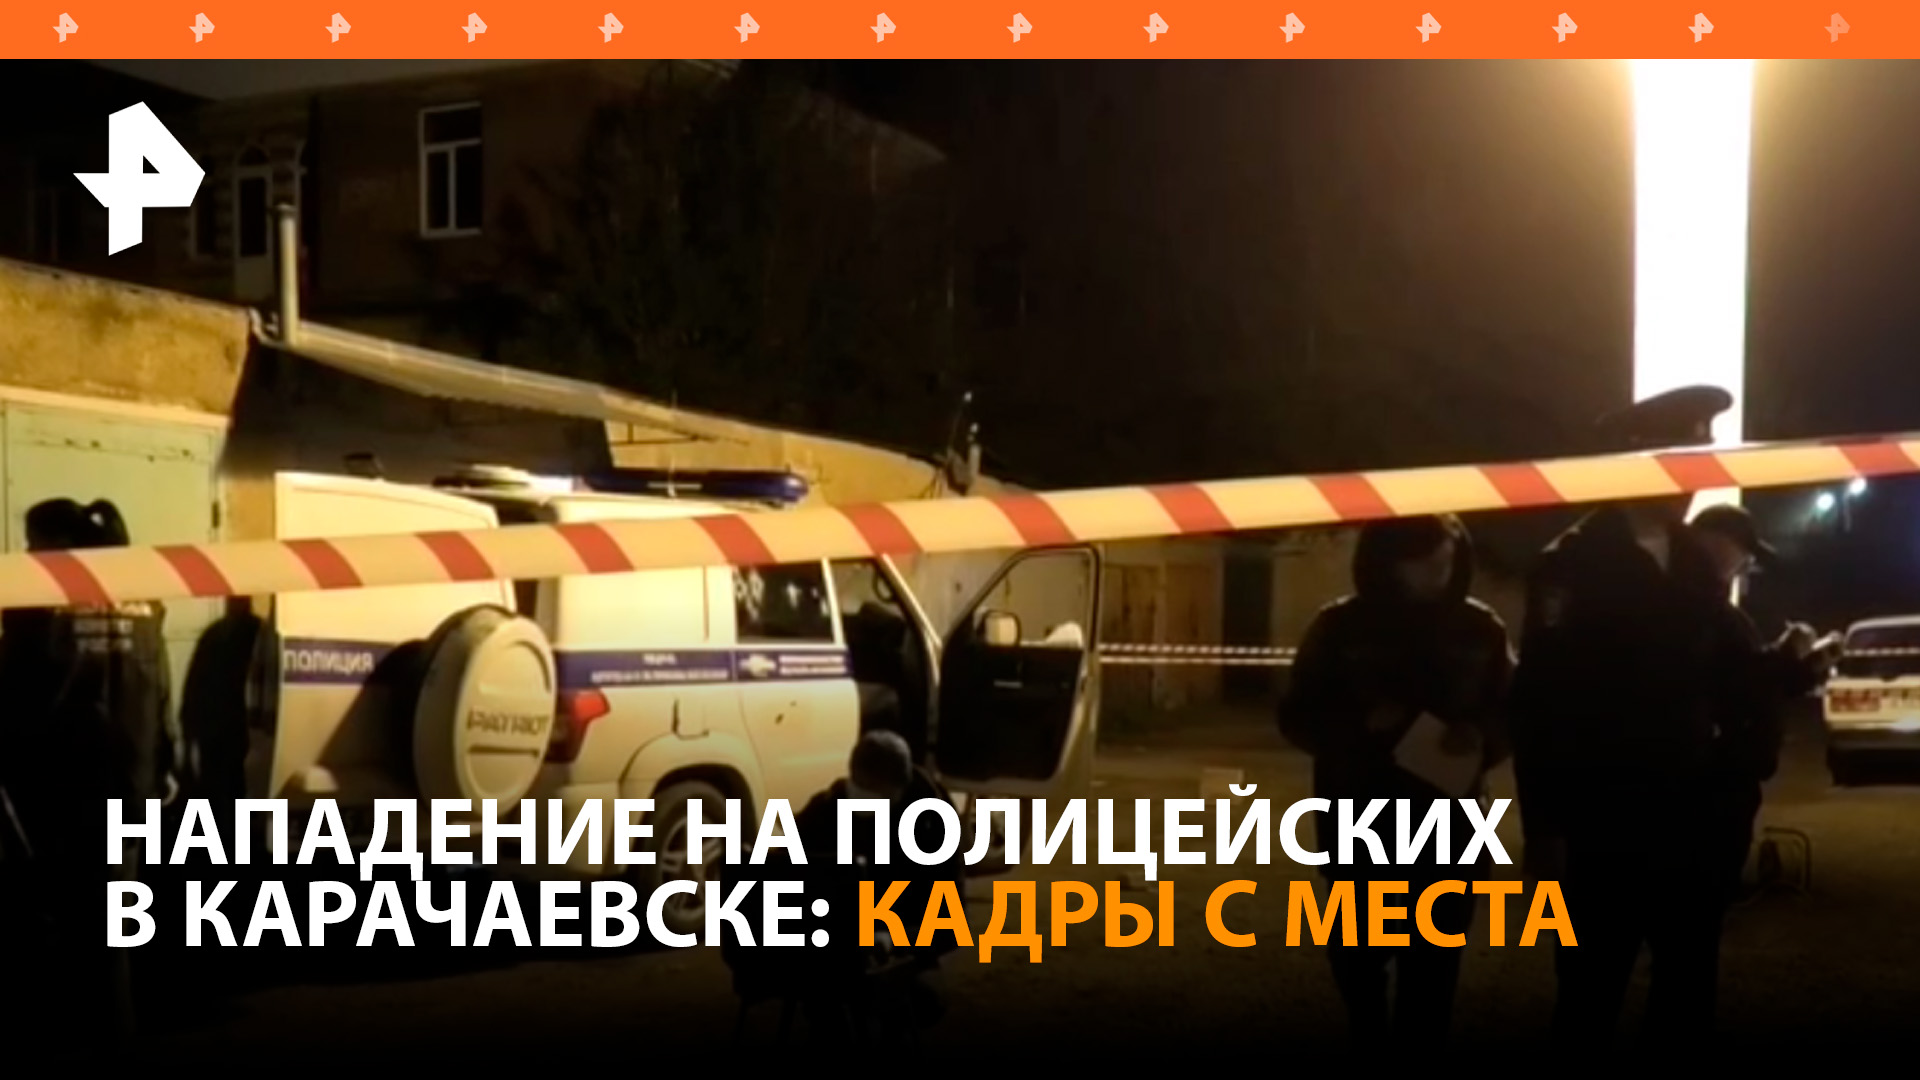 Двое полицейских скончались после нападения с огнестрельным оружием в Карачаевске: кадры с места